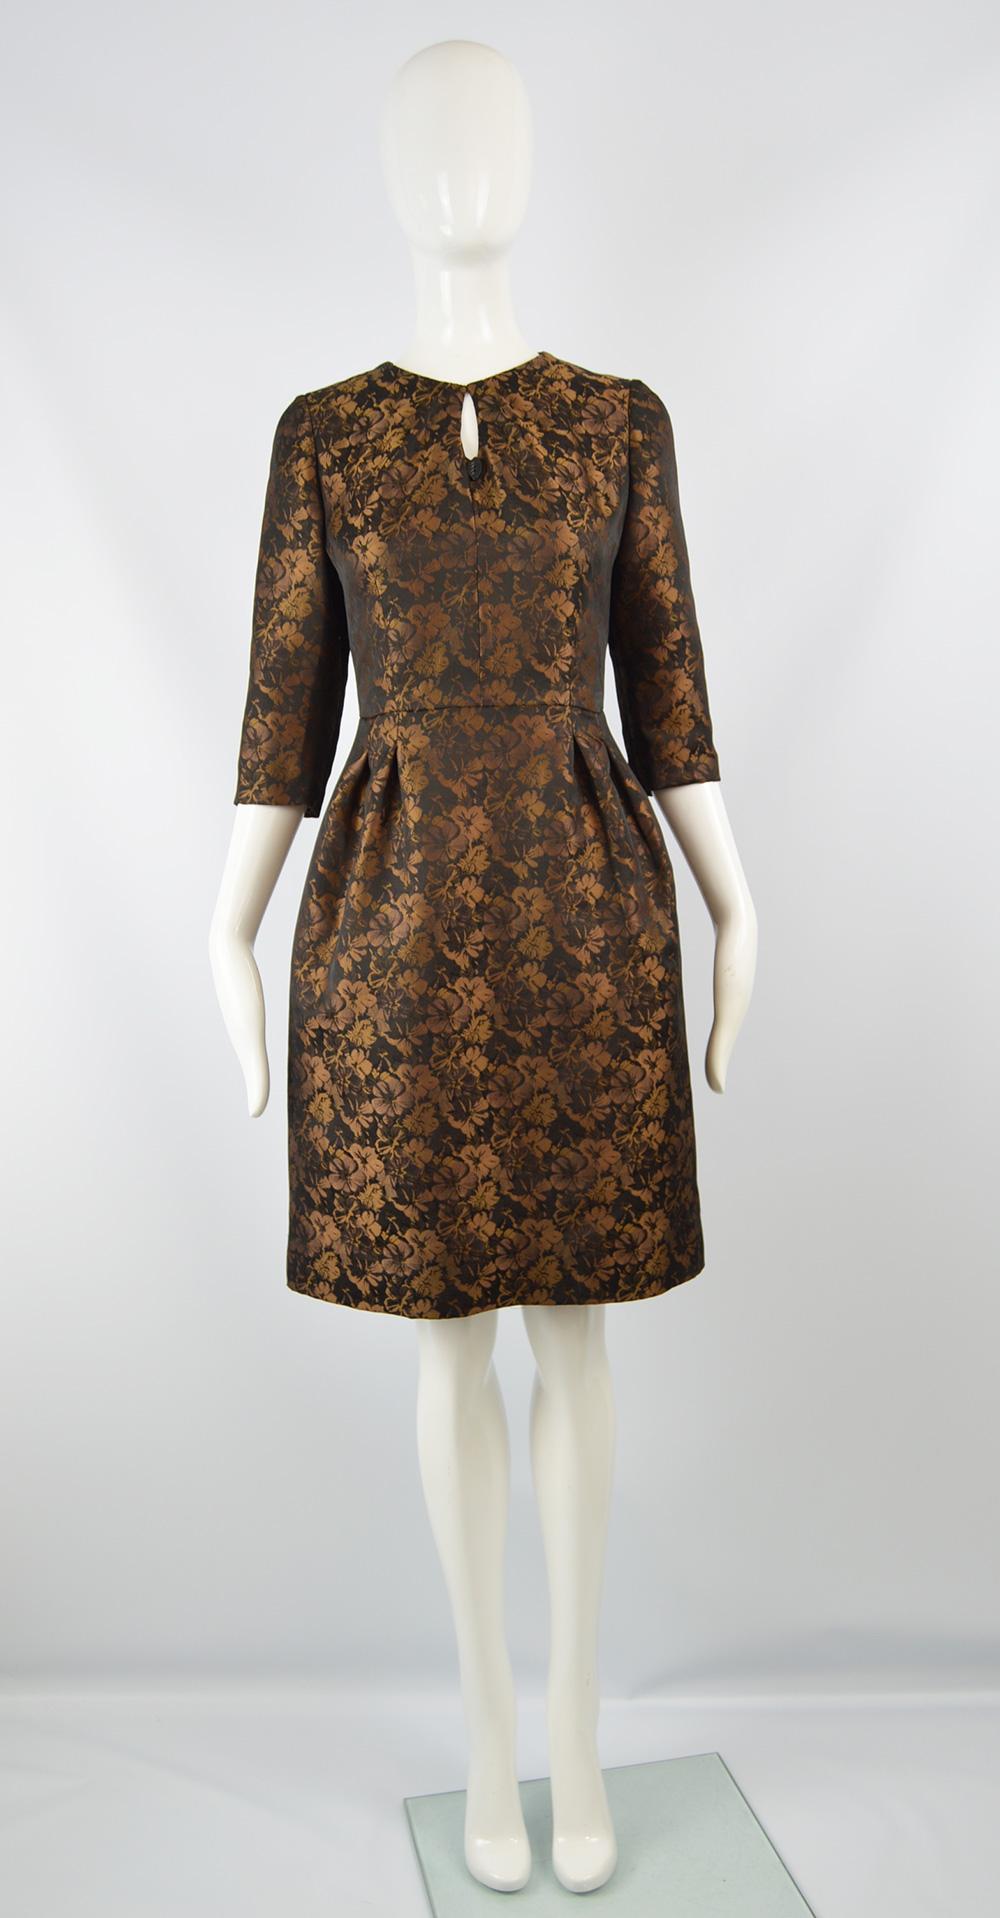 Raffaella Curiel Couture Black & Bronze Floral Jacquard Evening Dress, 1980s

Size: Unlabelled; fits like a UK 10/ US 6/ EU 38. Please check measurements.  
Bust - 34” / 86cm
Waist - 29” / 73cm
Hips - 44” / 112cm
Length (Shoulder to Hem) - 36” /